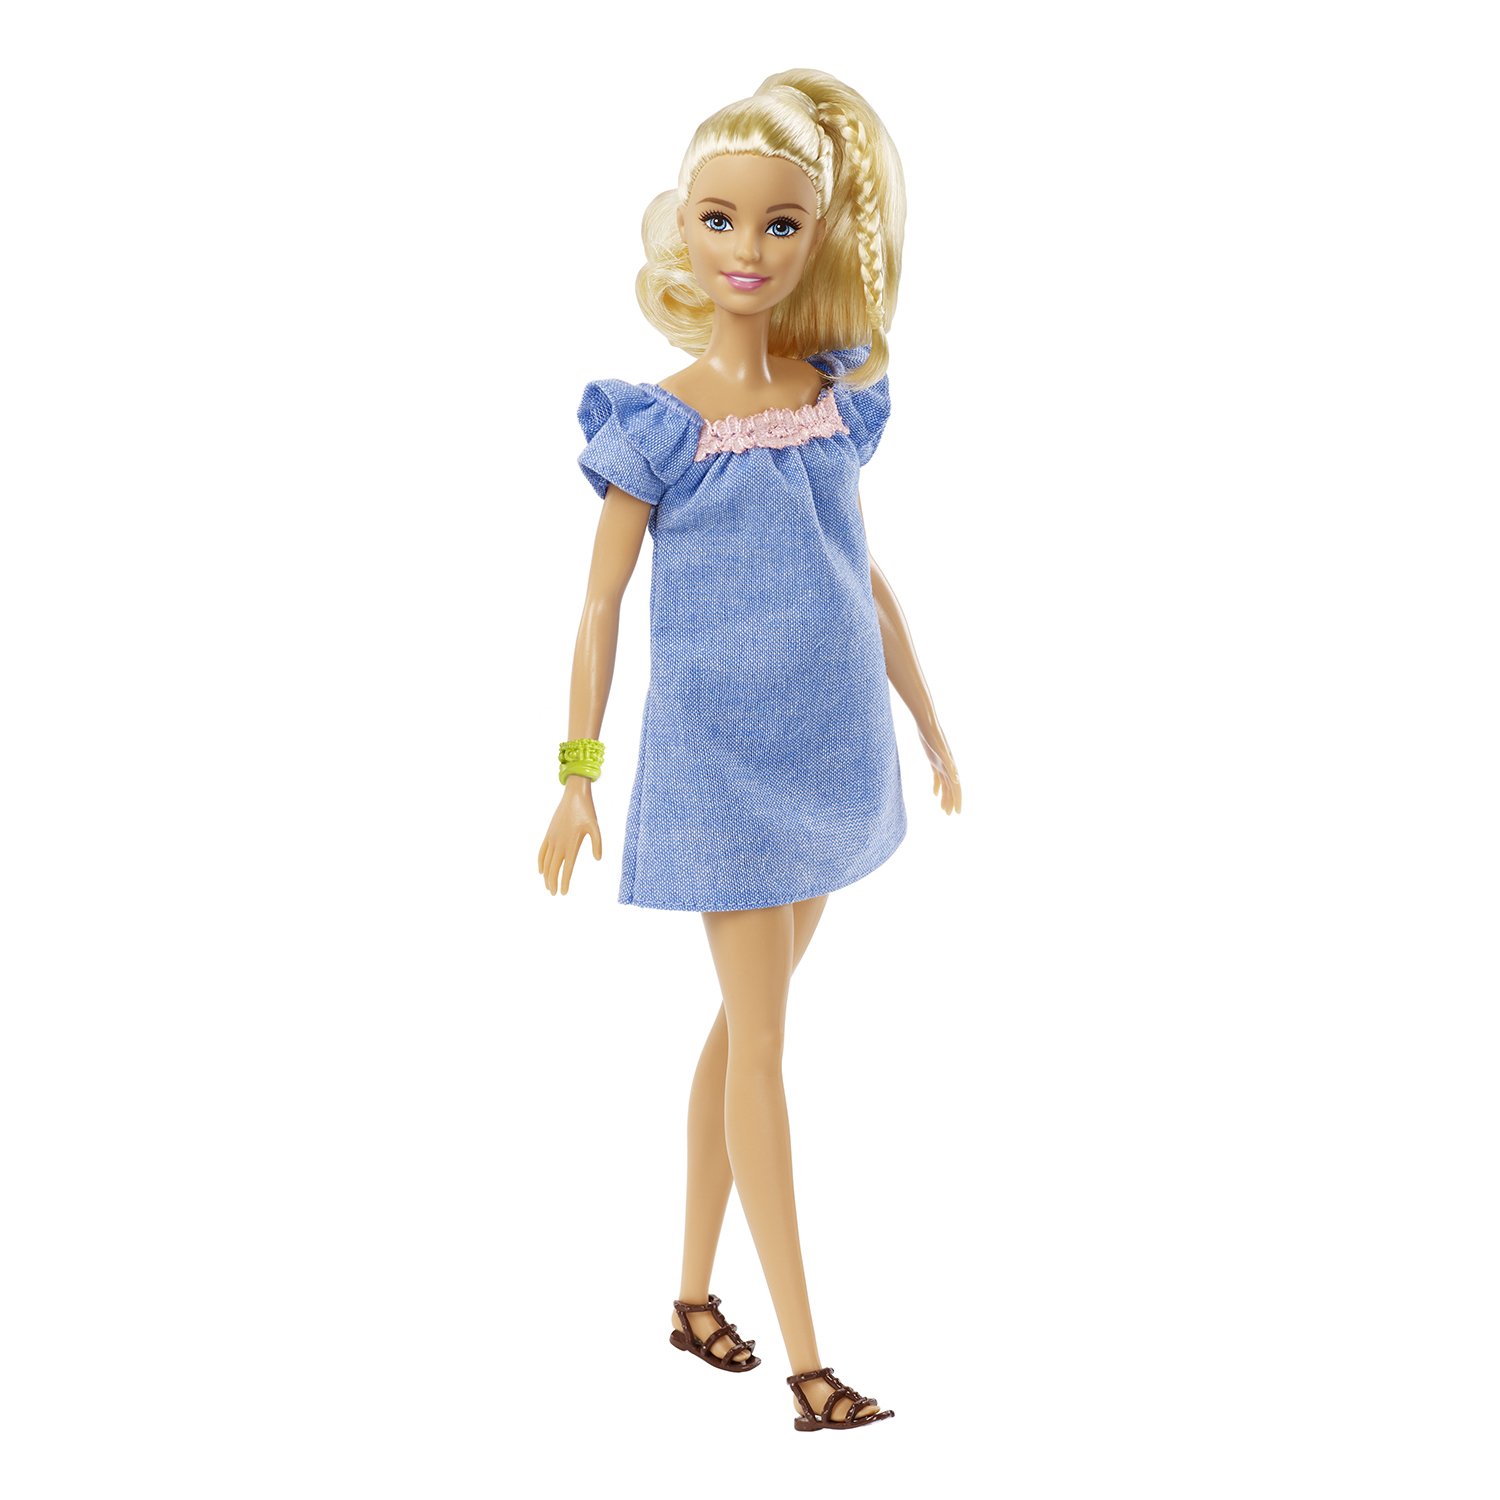 Кукла Barbie FRY79 с дополнительным комплектом одежды, 29 см